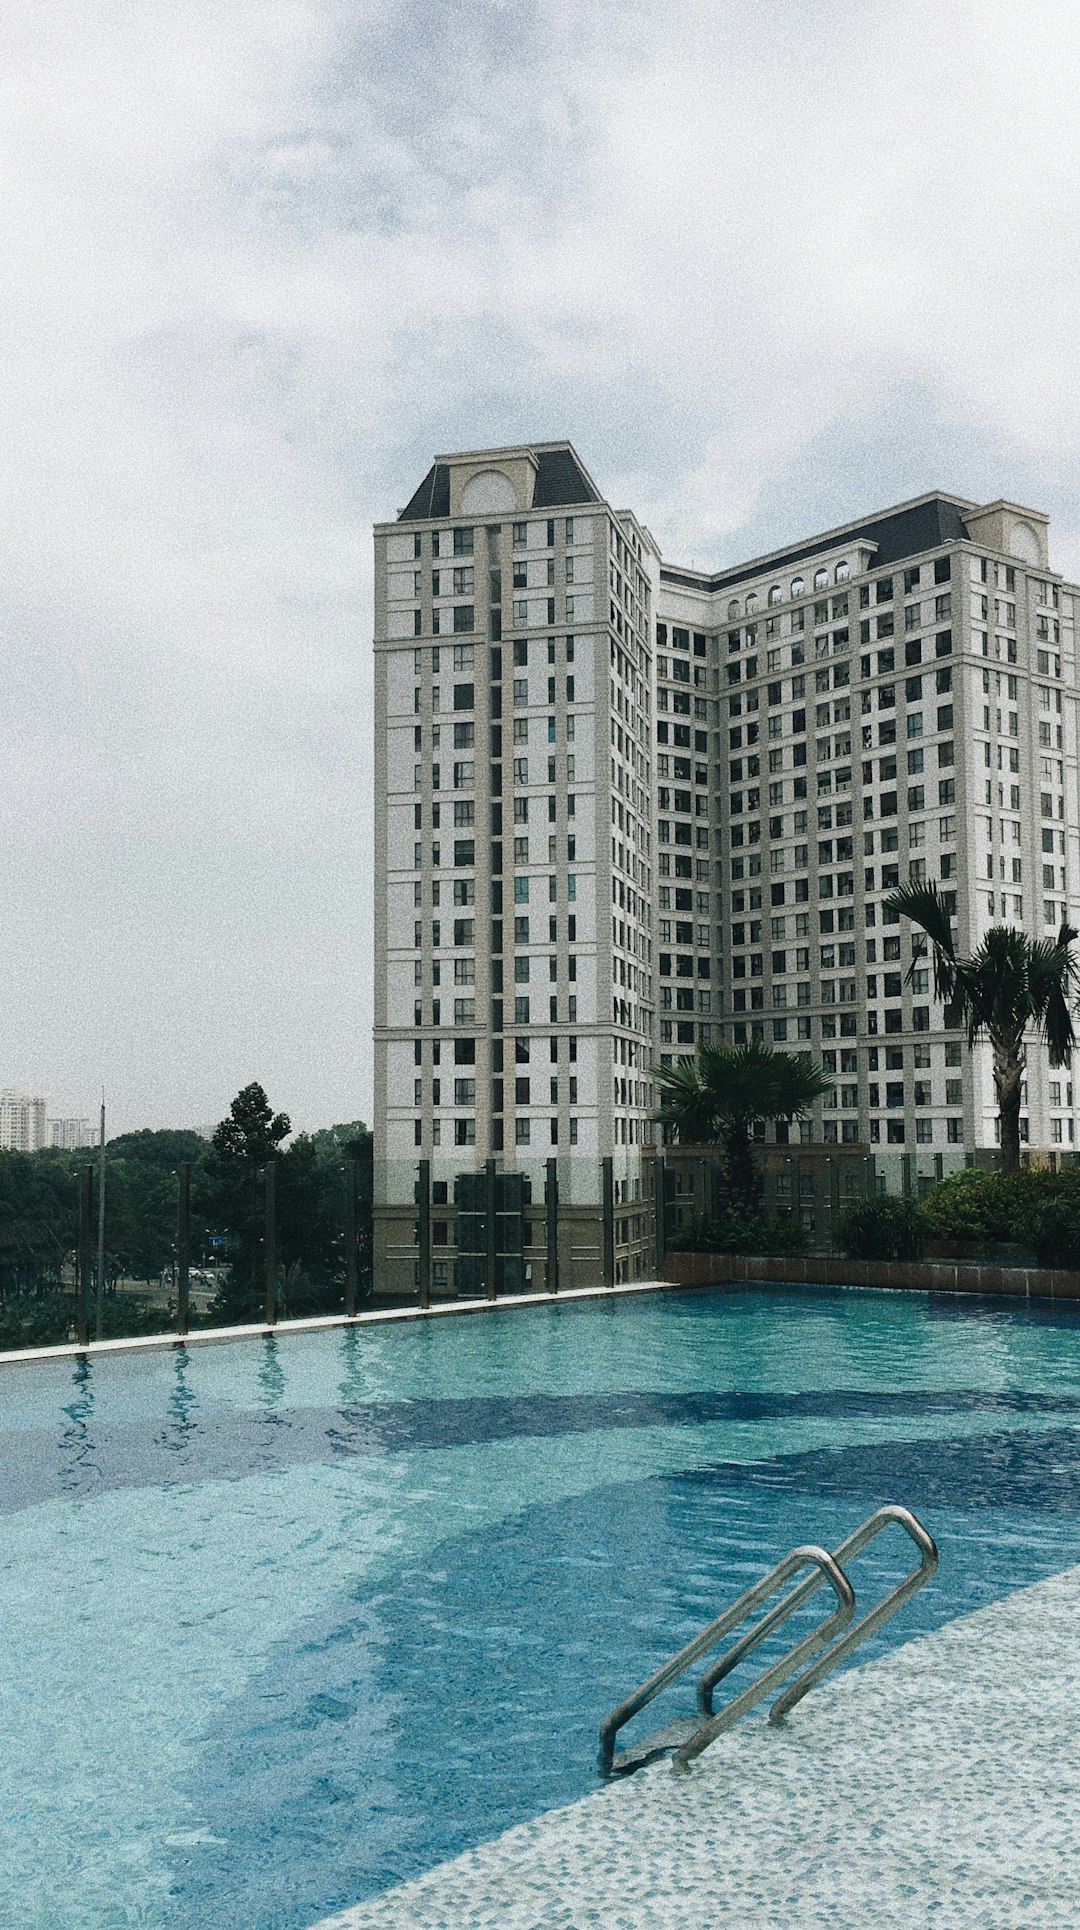 Swimming pool photo spot 130 Đường Hồng Hà Vietnam